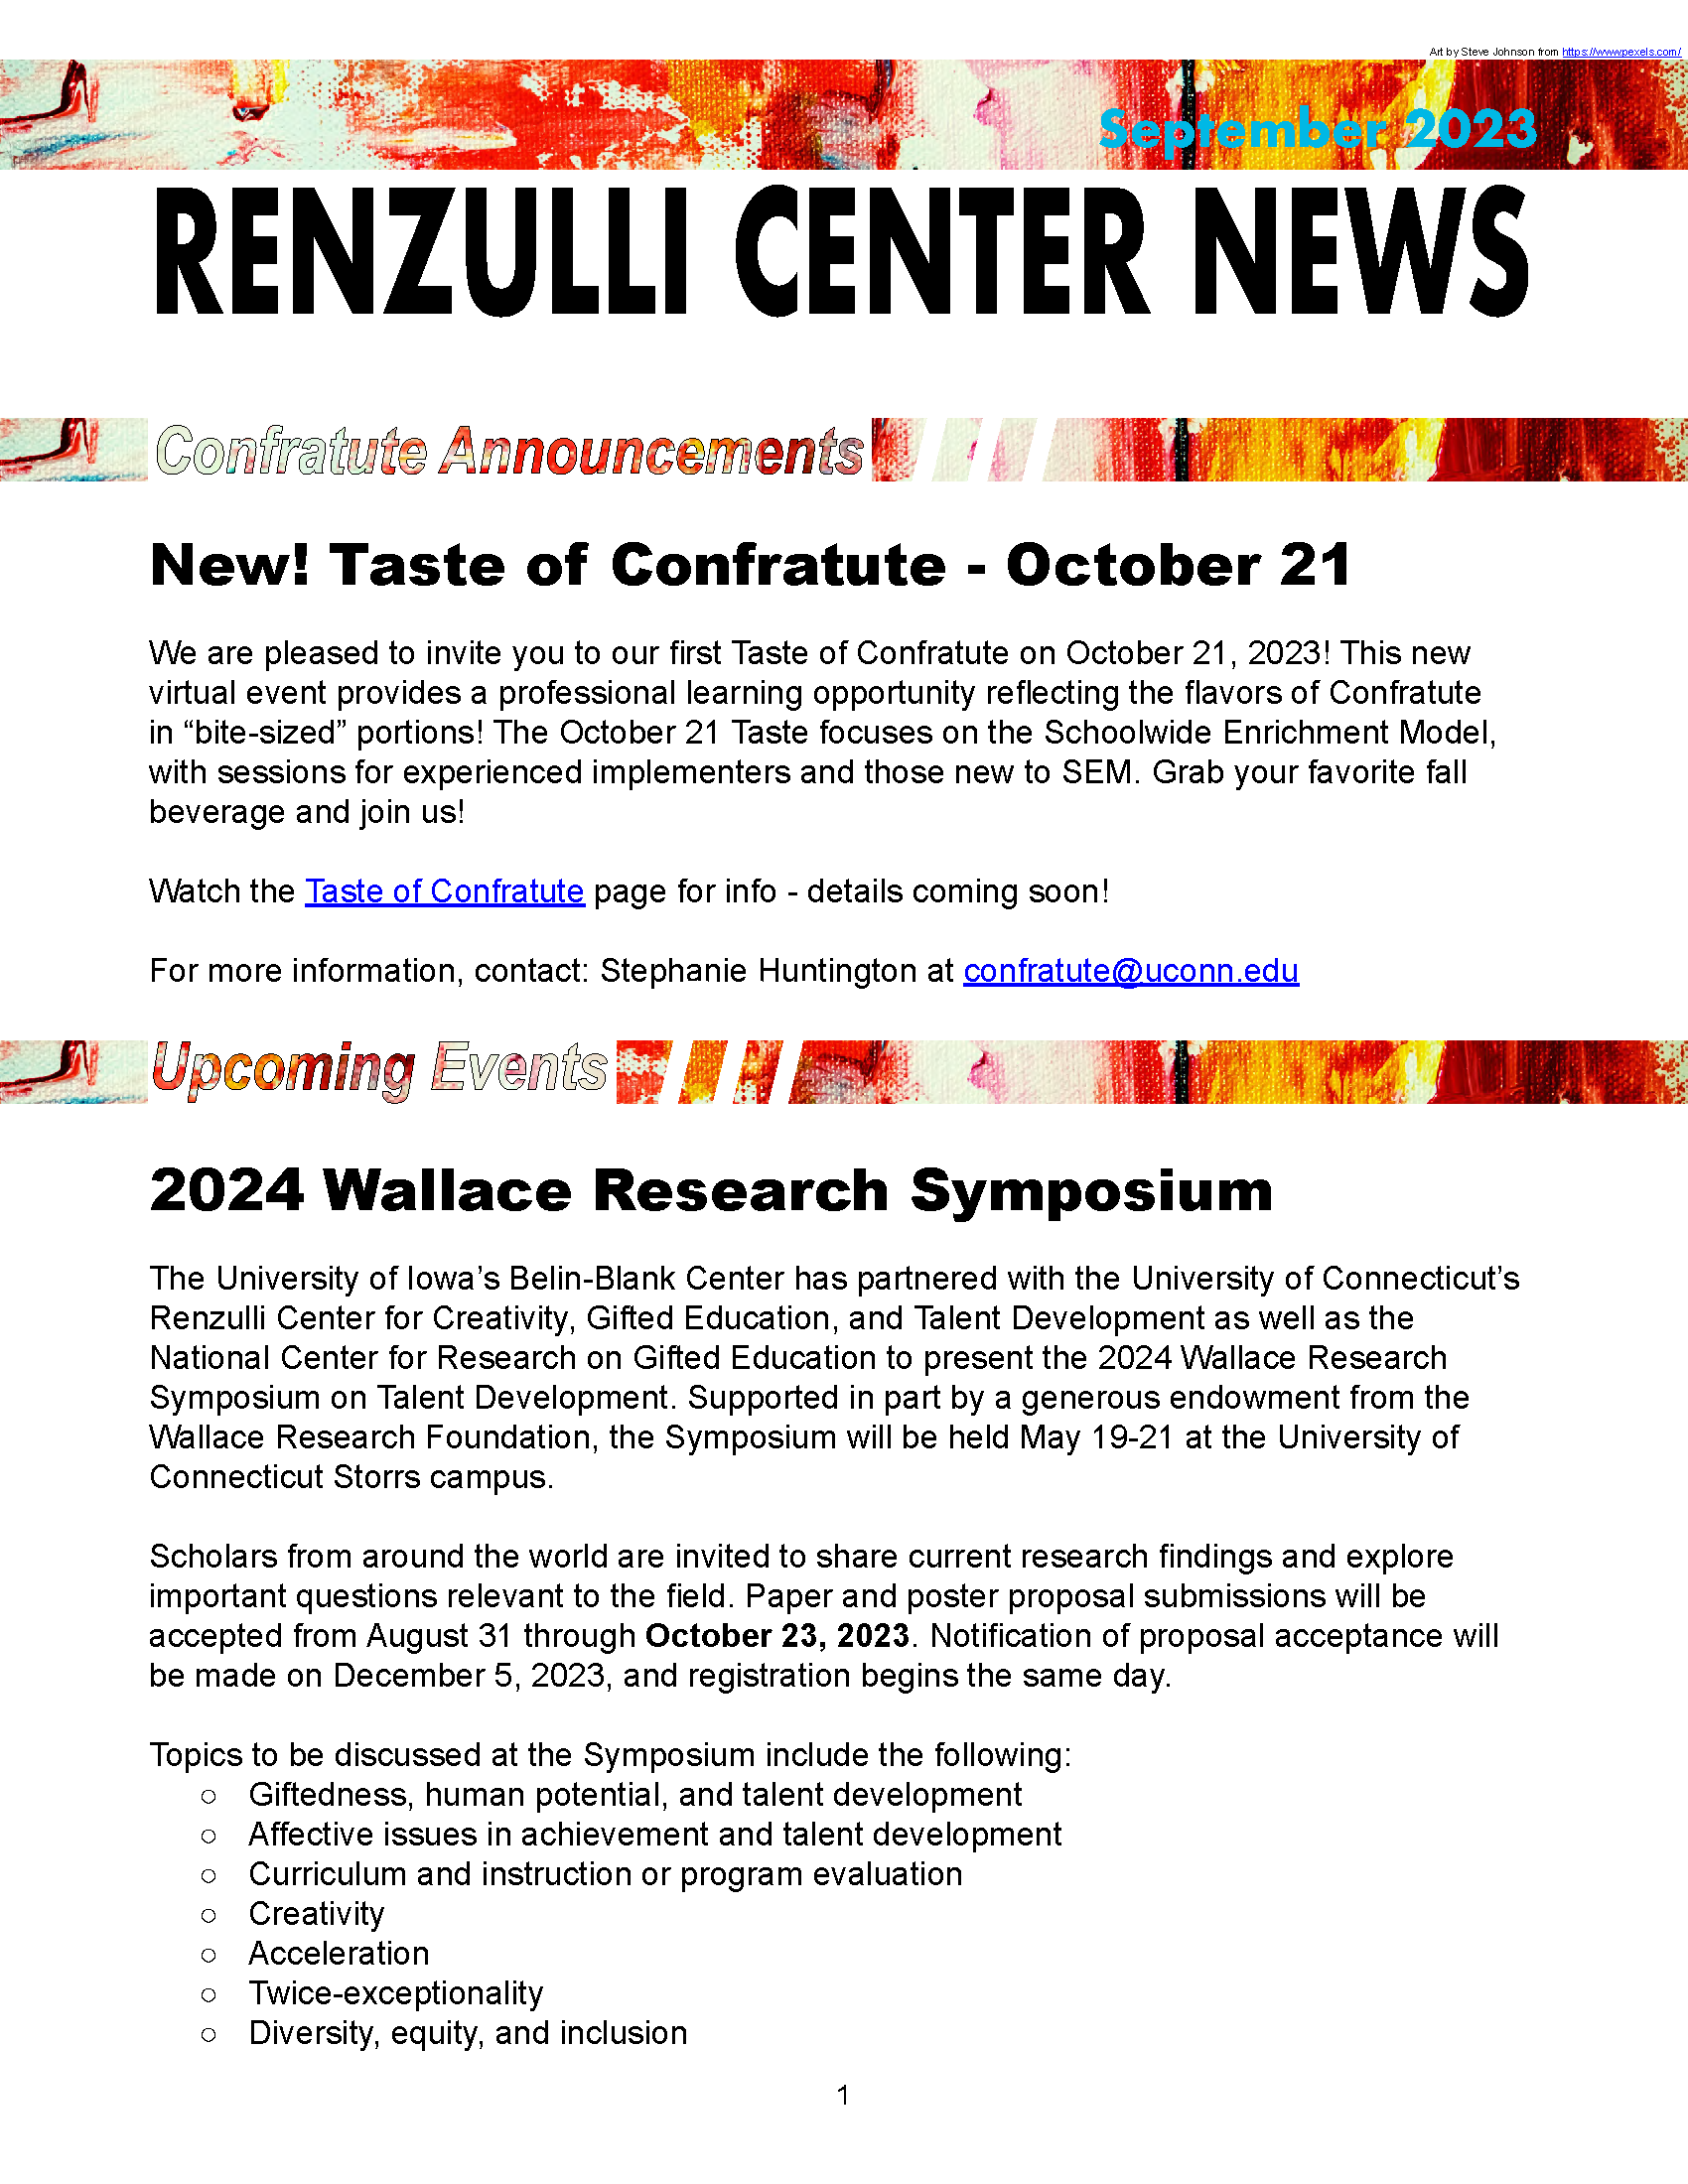 September 2023 Renzulli News Cover Graphic